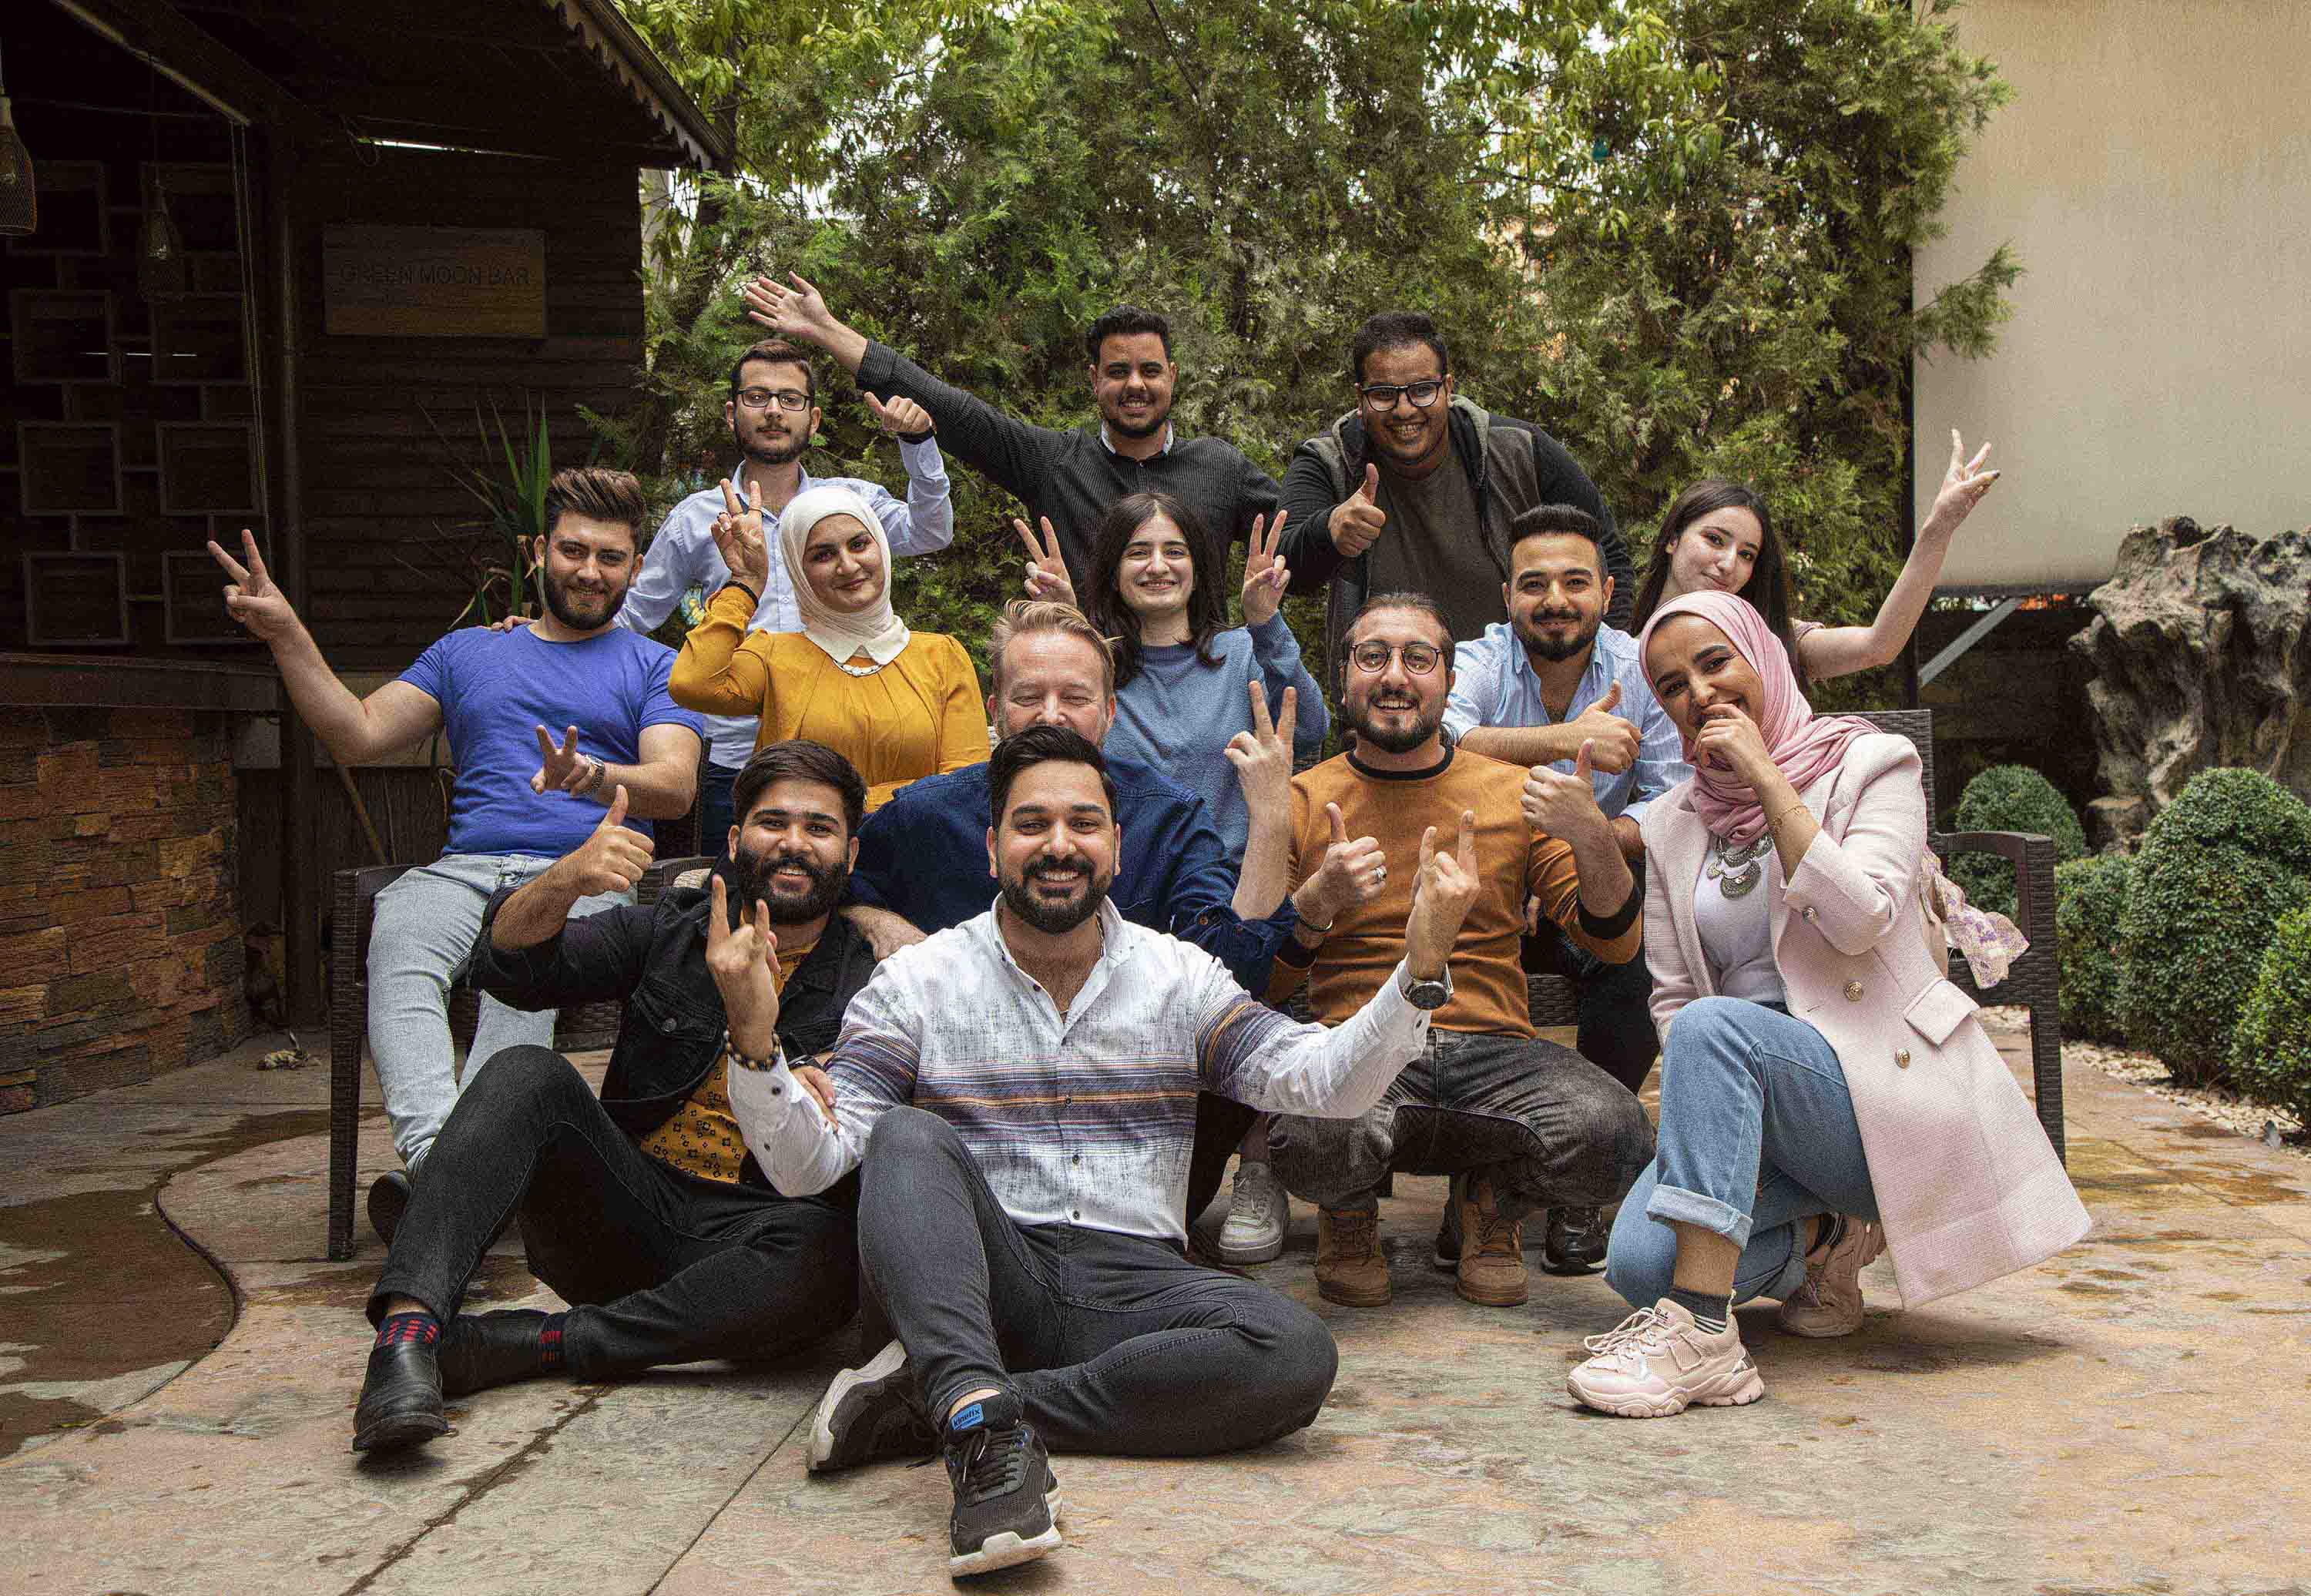 Under programmet Salam får ungdomarna lära känna andra ungdomar från olika bakgrunder, religiösa grupper och städer i Irak. Ungdomarna delar en önskan om att skapa fred och ett bättre samhälle. Bild: Tech4Peace